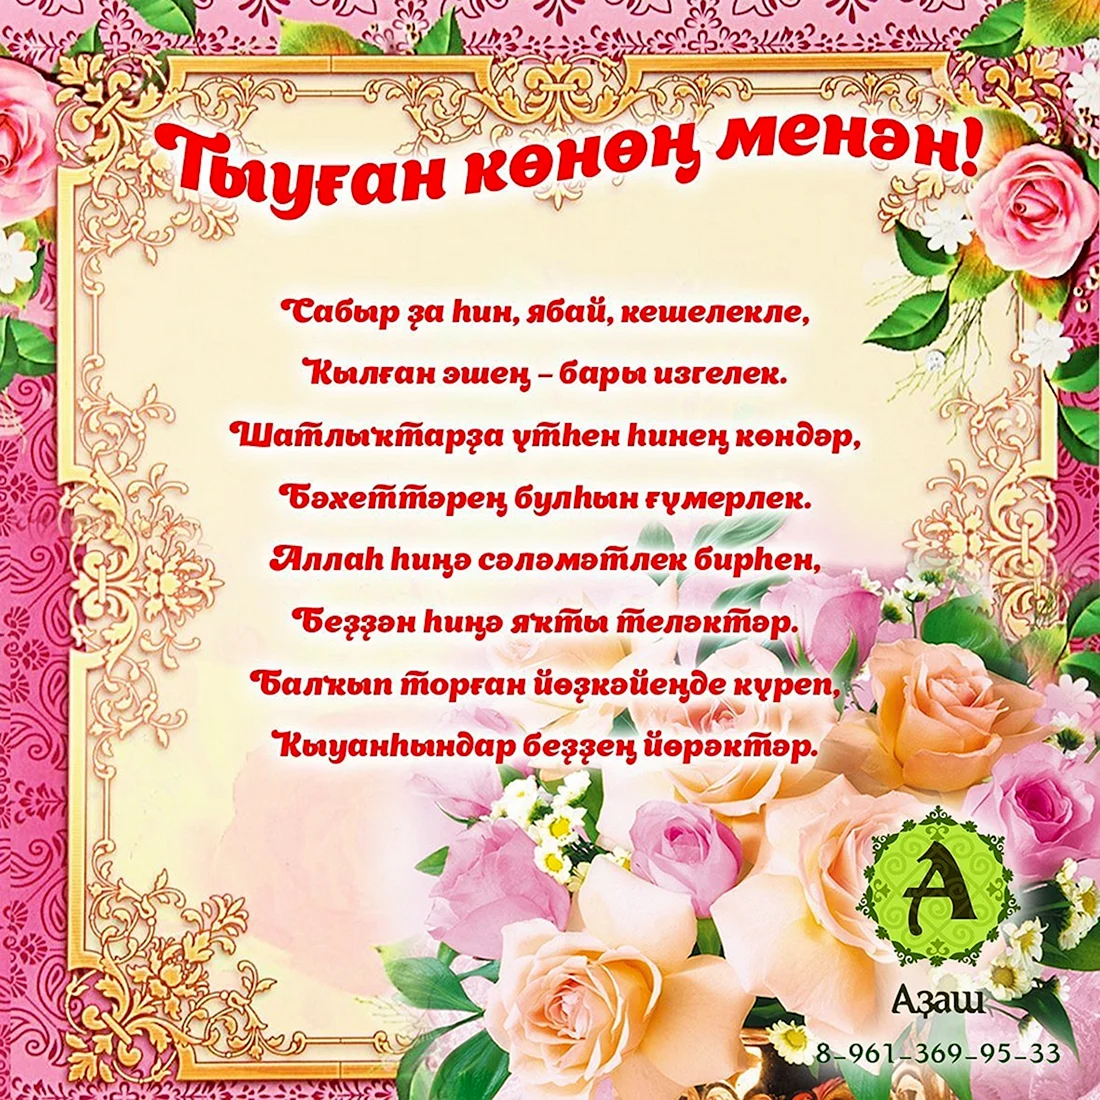 Поздравления с днем рождения на башкирском языке